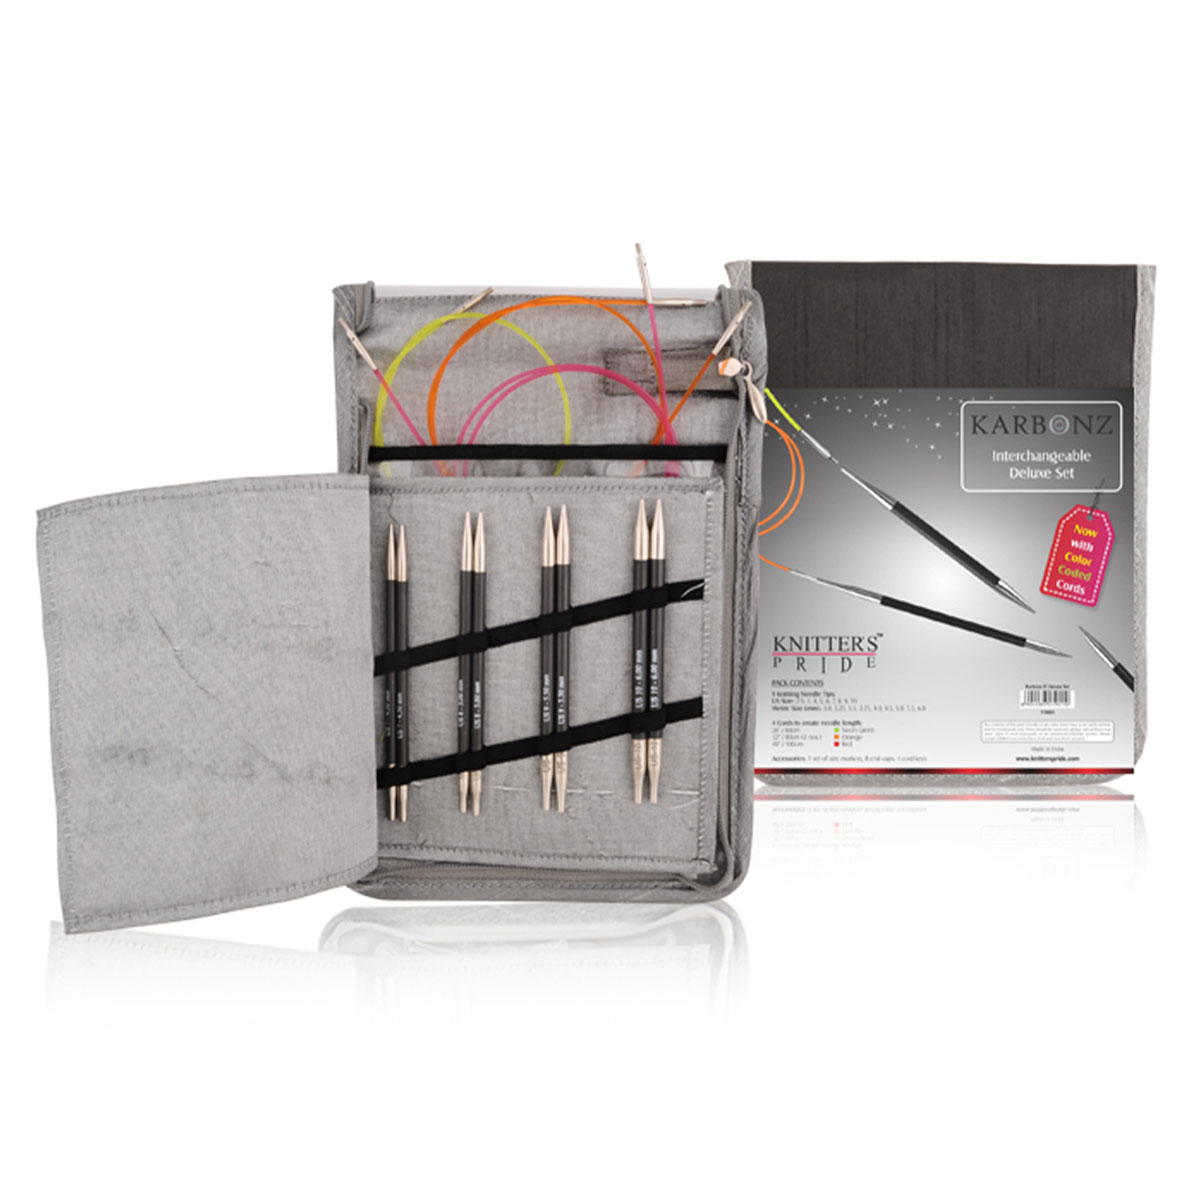 Knitter's Pride Karbonz Interchangeable Needle Sets Needles - Deluxe Set  Needles